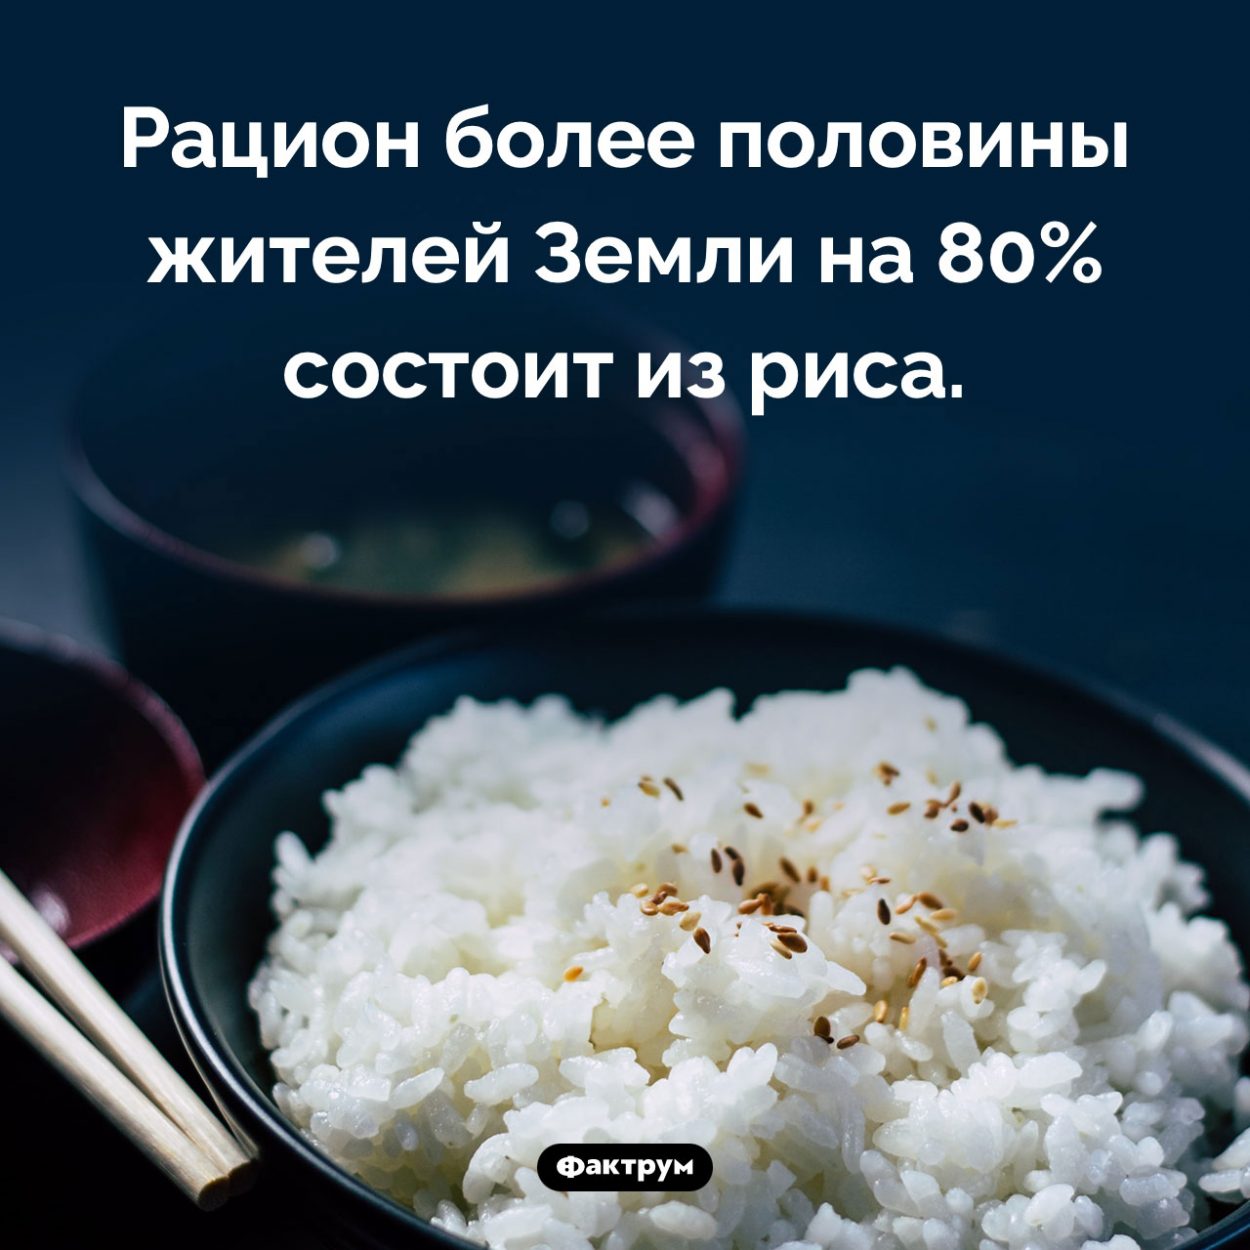 Рис — очень популярная еда. Рацион более половины жителей Земли на 80% состоит из риса.